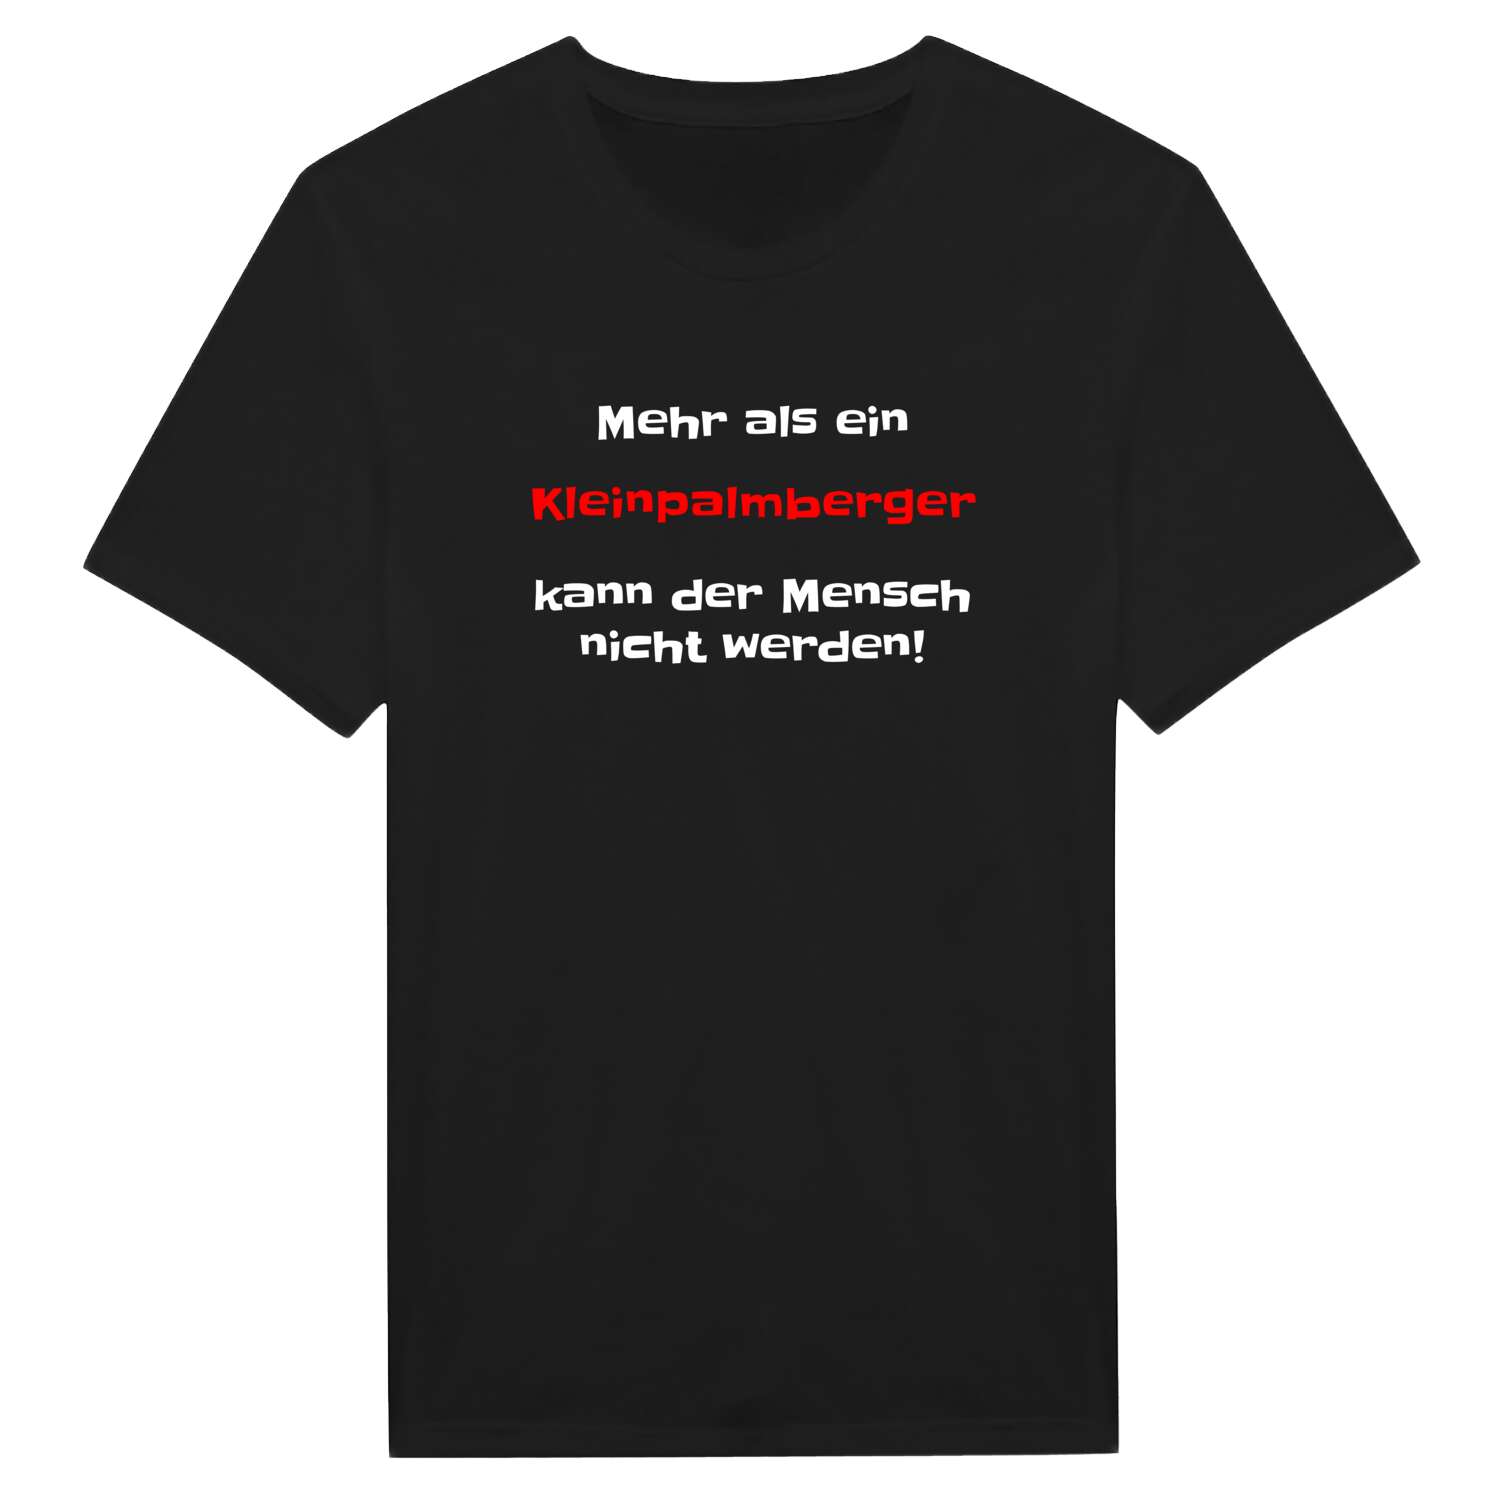 Kleinpalmberg T-Shirt »Mehr als ein«